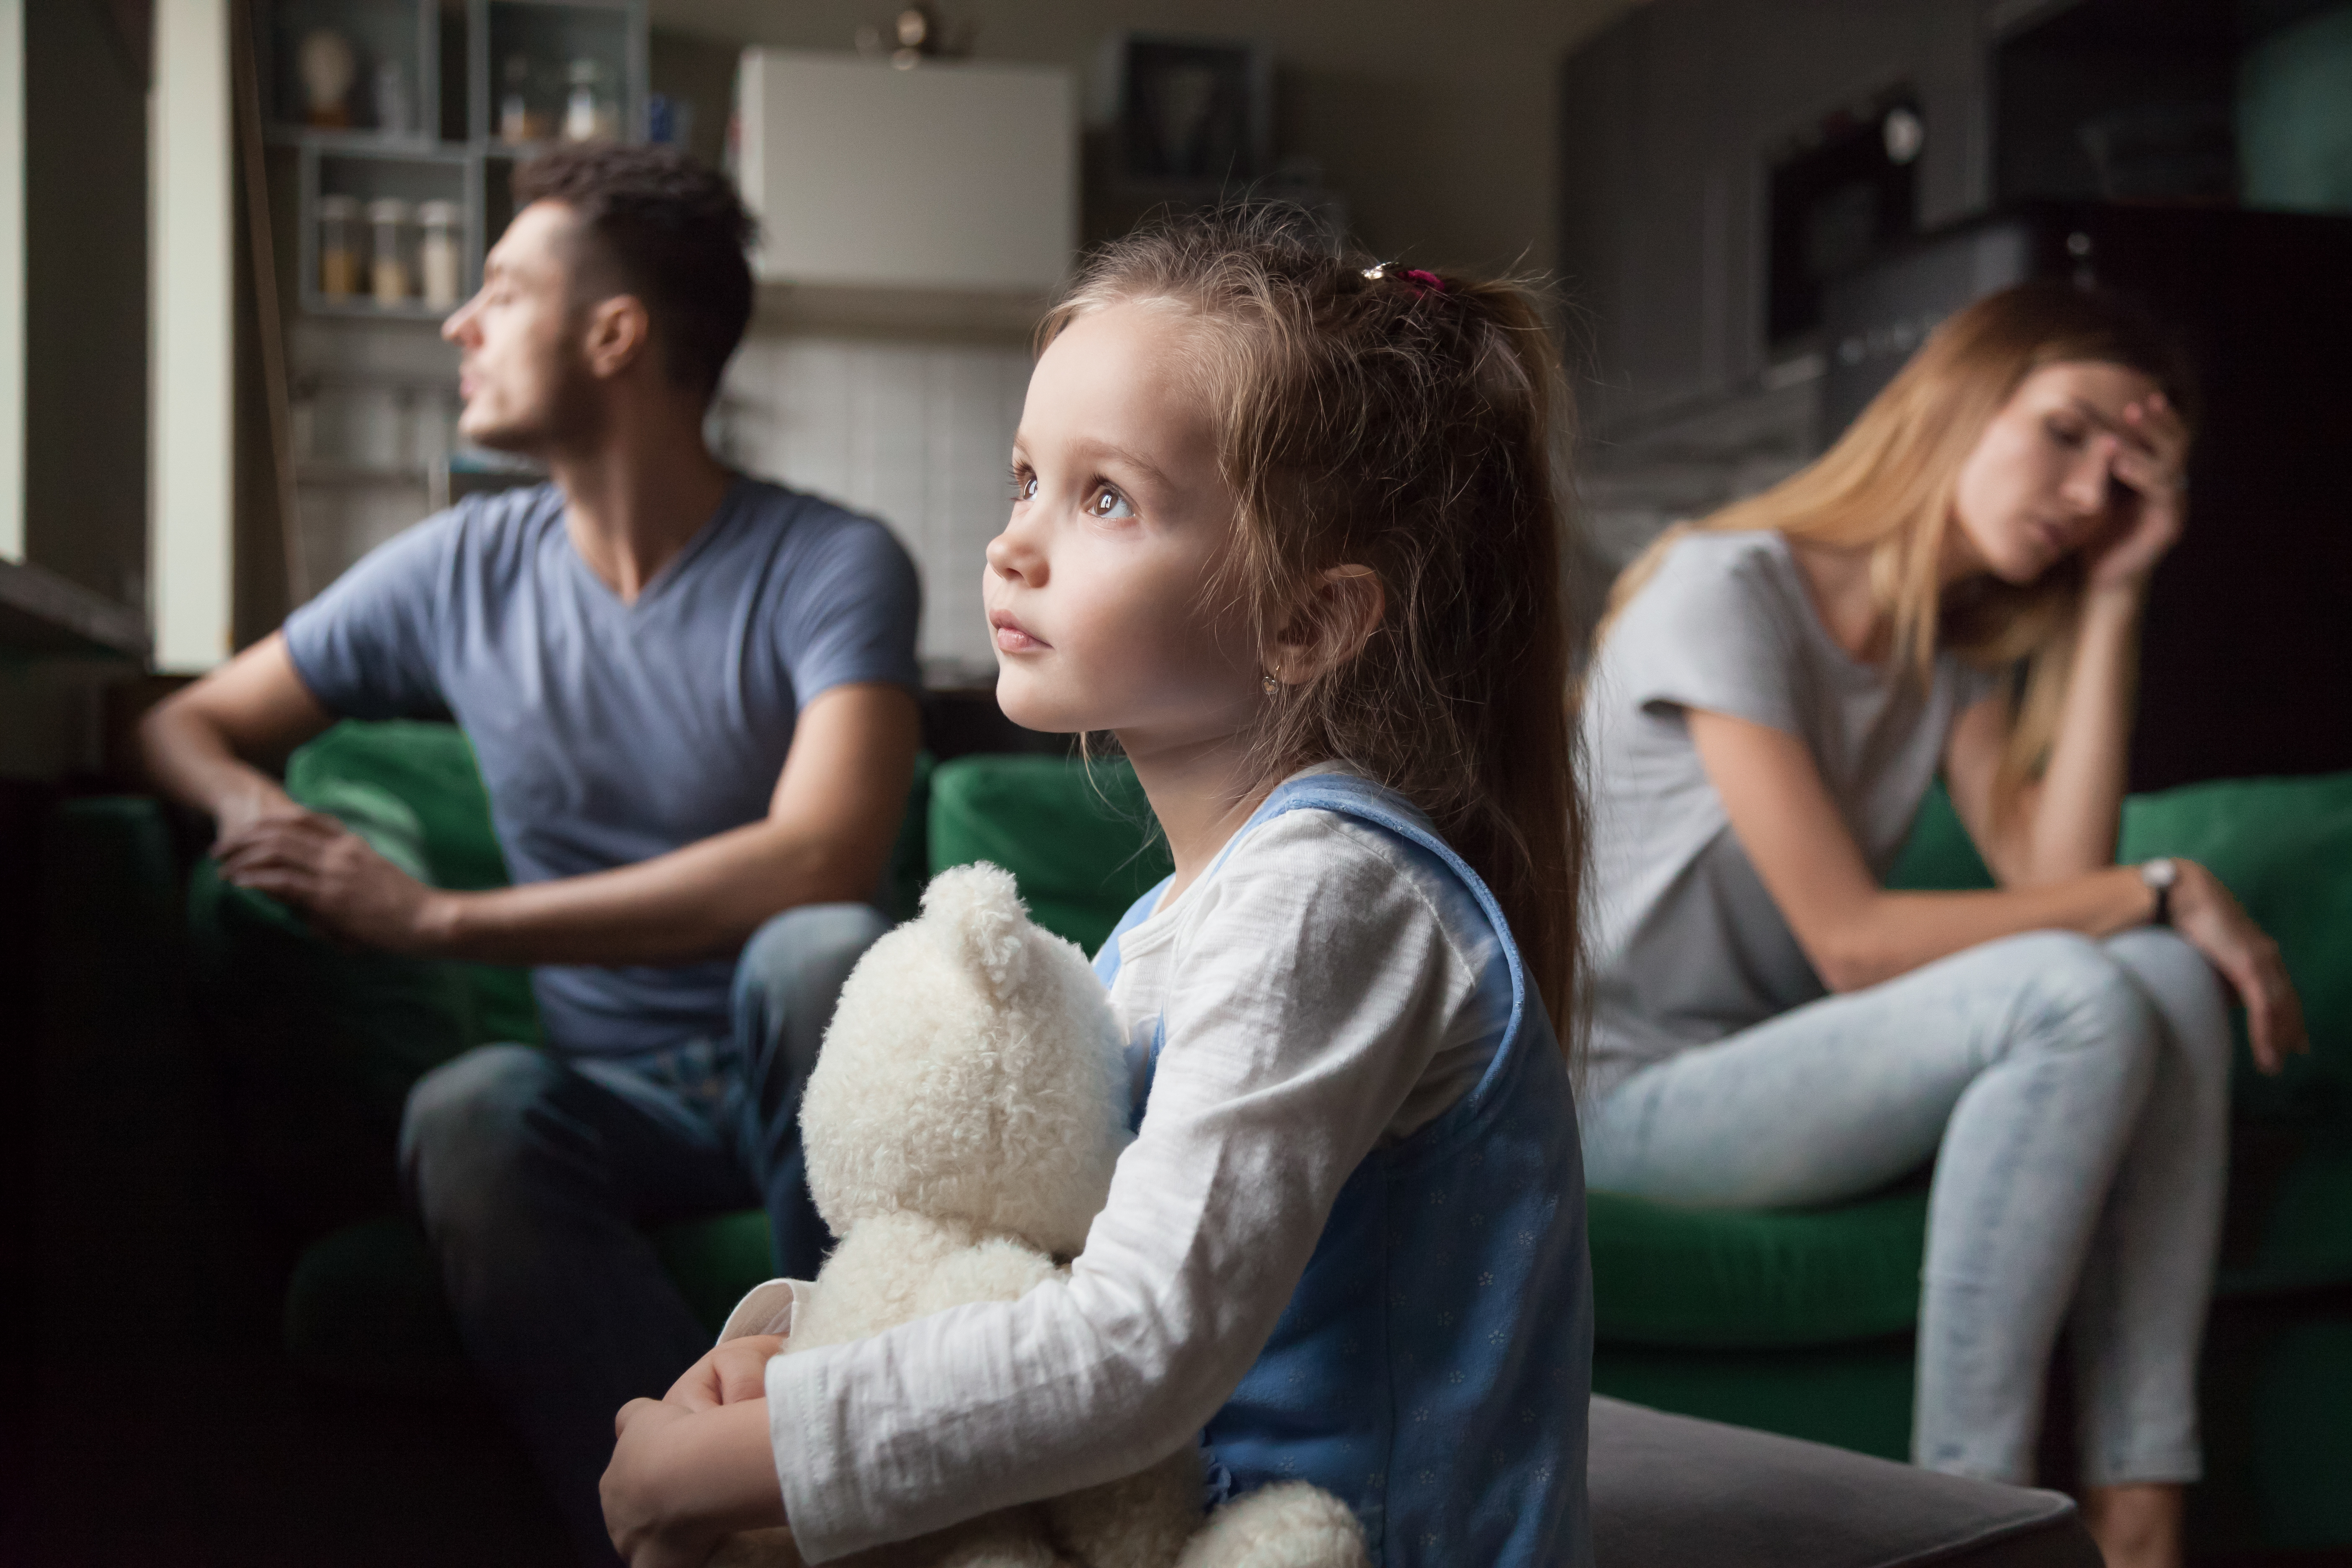 Хорошо ли жить с родителями с точки зрения психологии